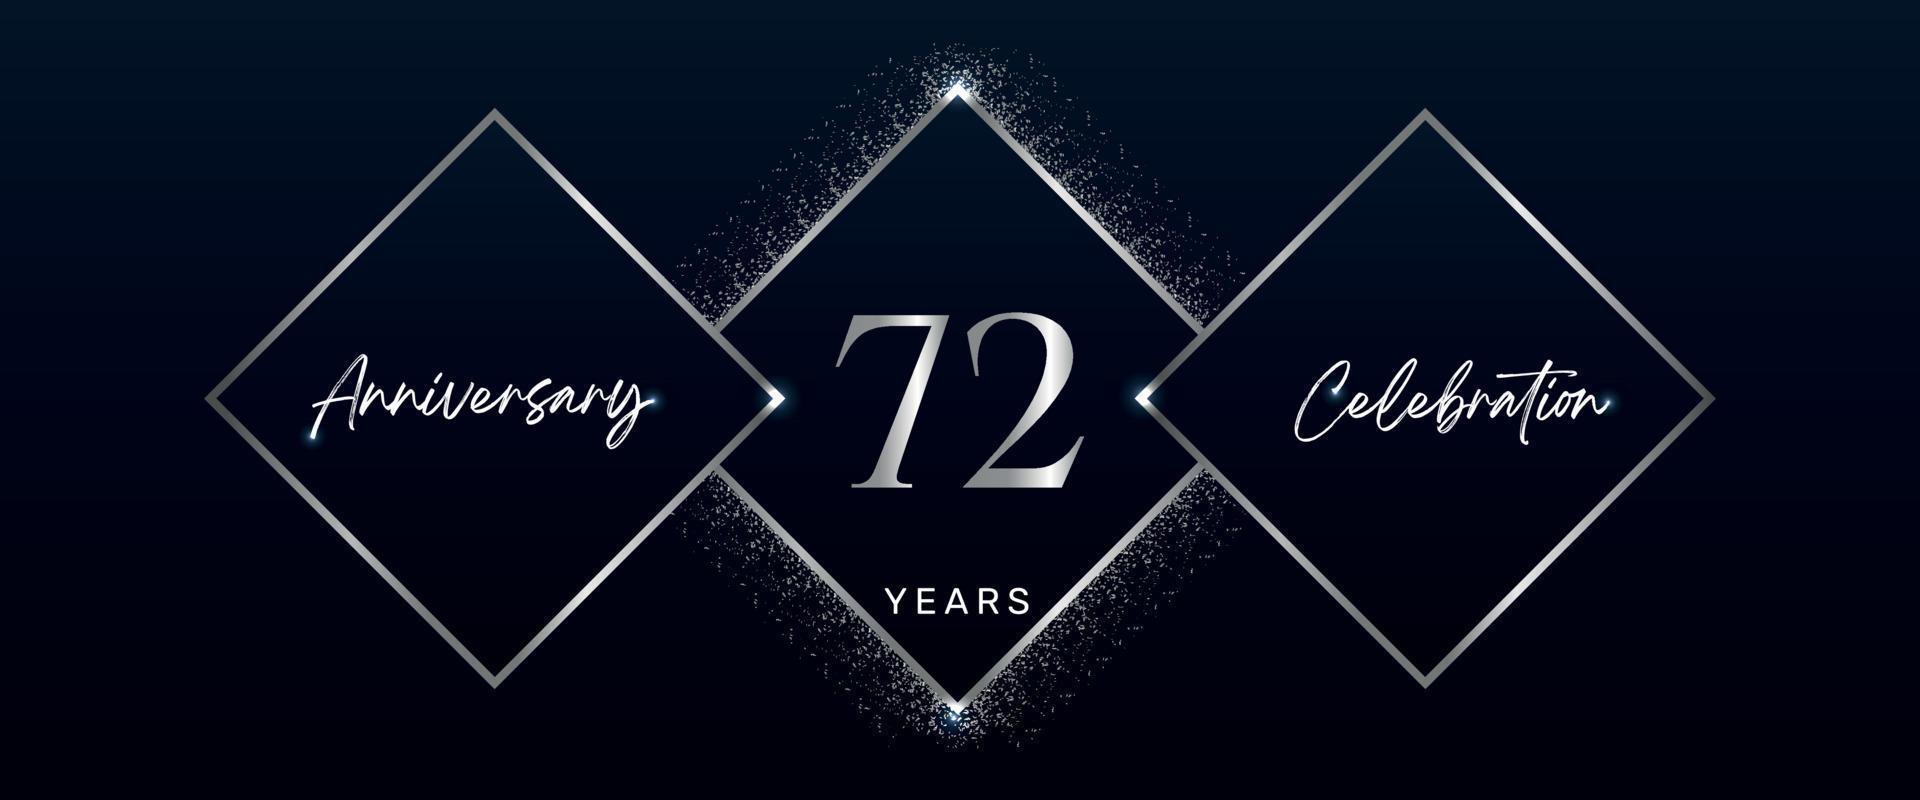 Logotipo de celebración de aniversario de 72 años. diseño vectorial para eventos de celebración de aniversario, fiesta de cumpleaños, tarjeta de felicitación, boda, tarjeta de invitación. vector de diseño de plantilla de aniversario de 72 años